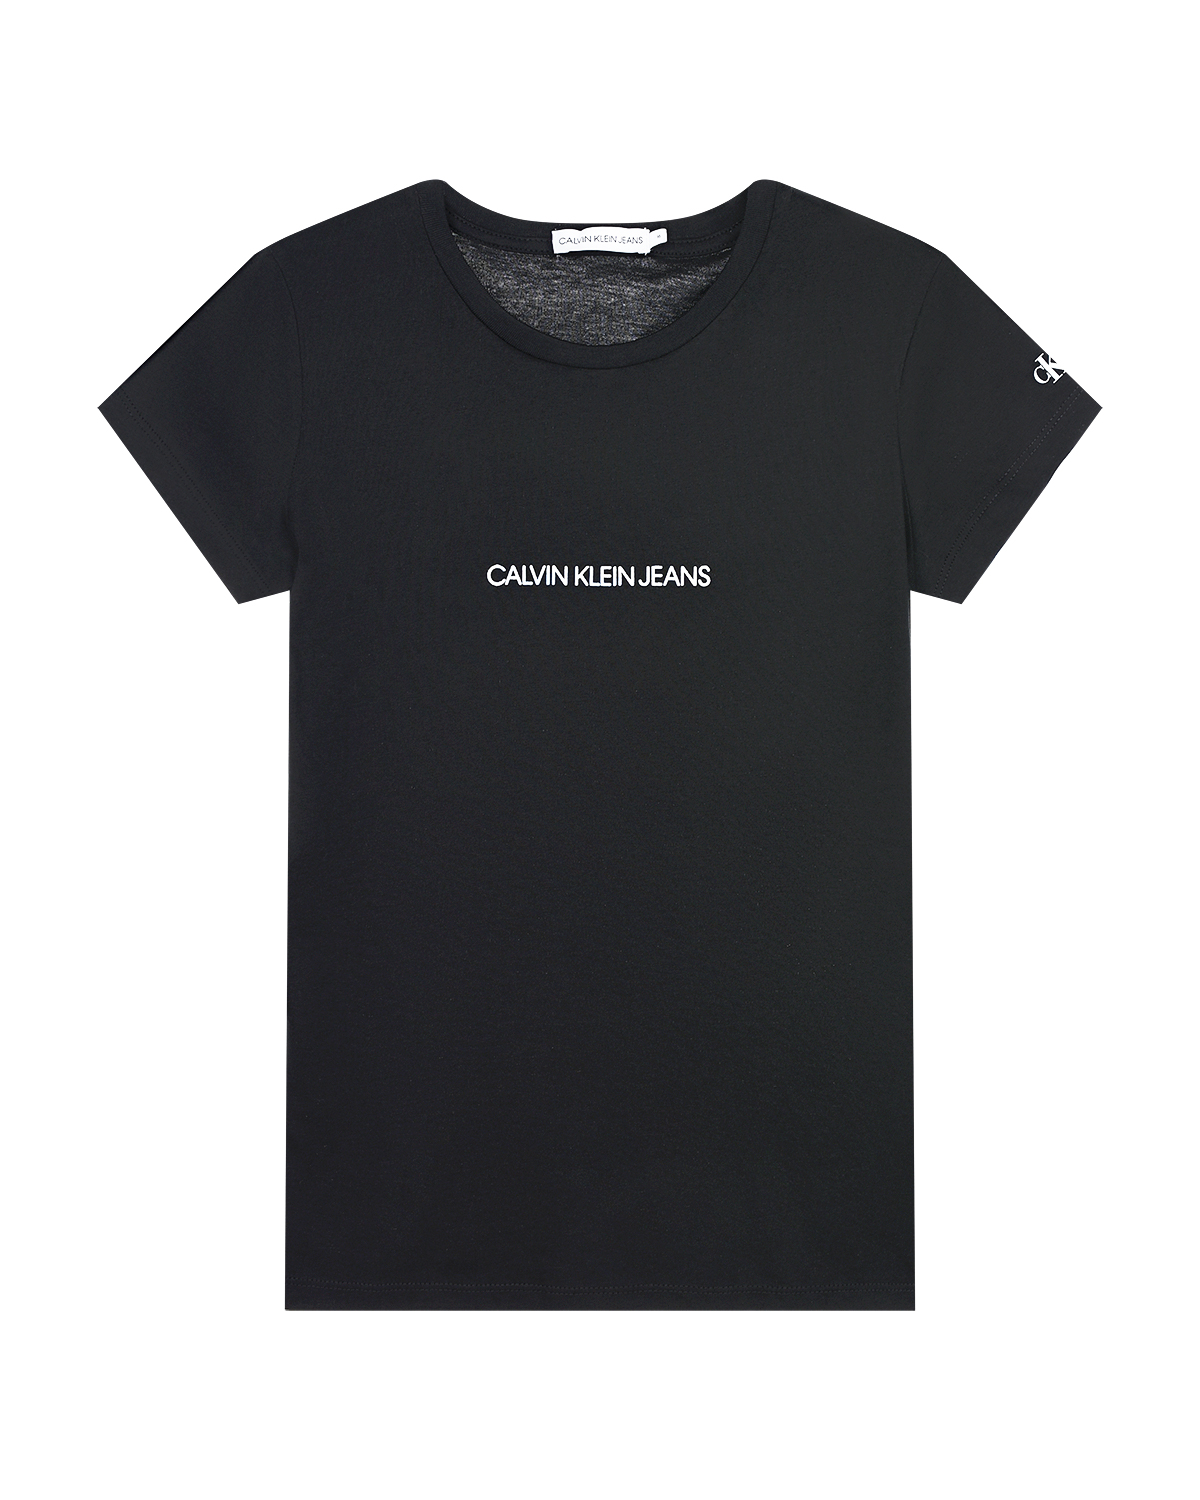 Черная футболка с белым логотипом Calvin Klein детская, размер 152, цвет черный - фото 1